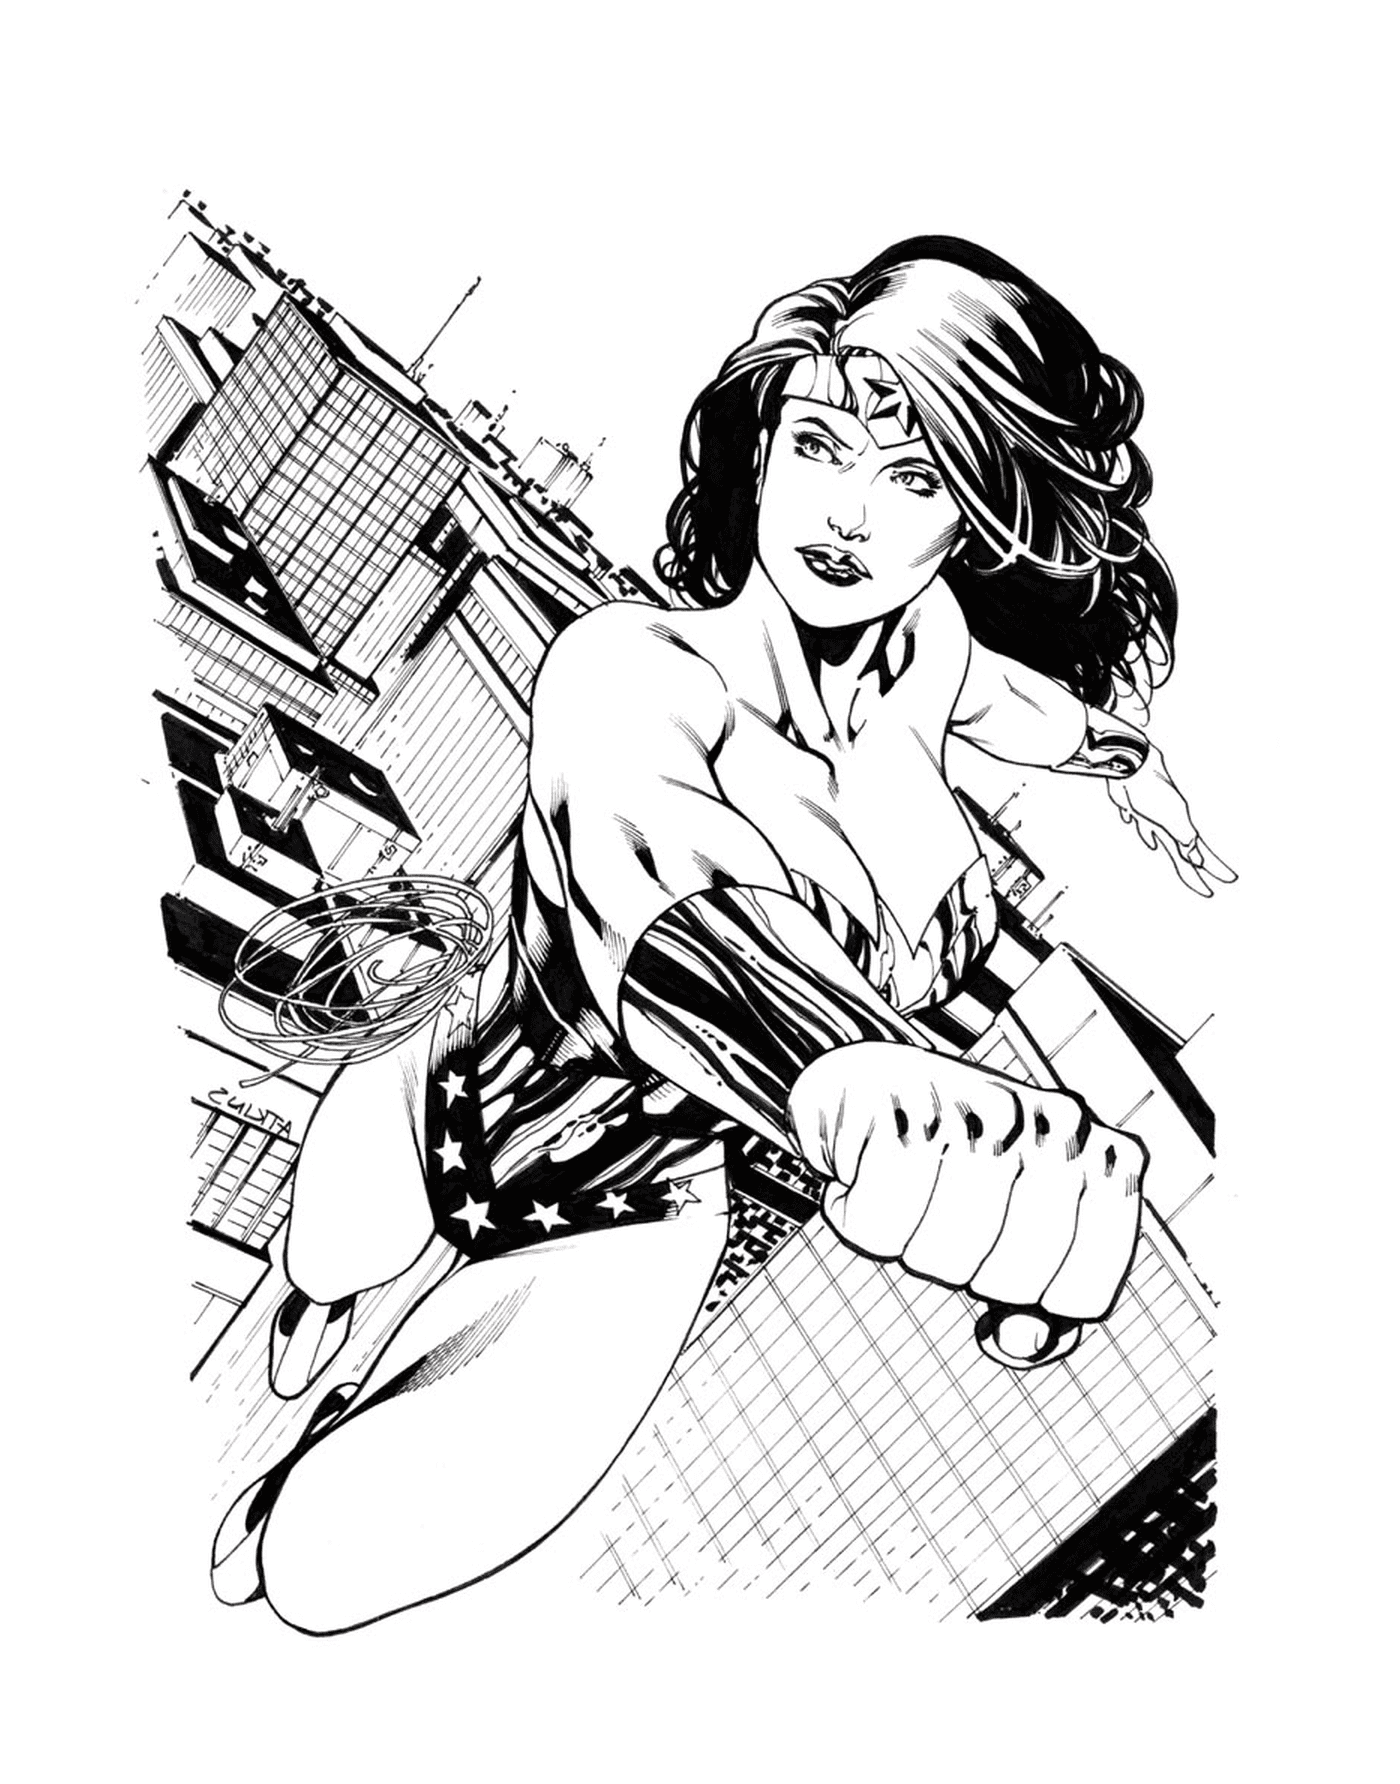  Wonder Woman's Sketch de Ratkins 